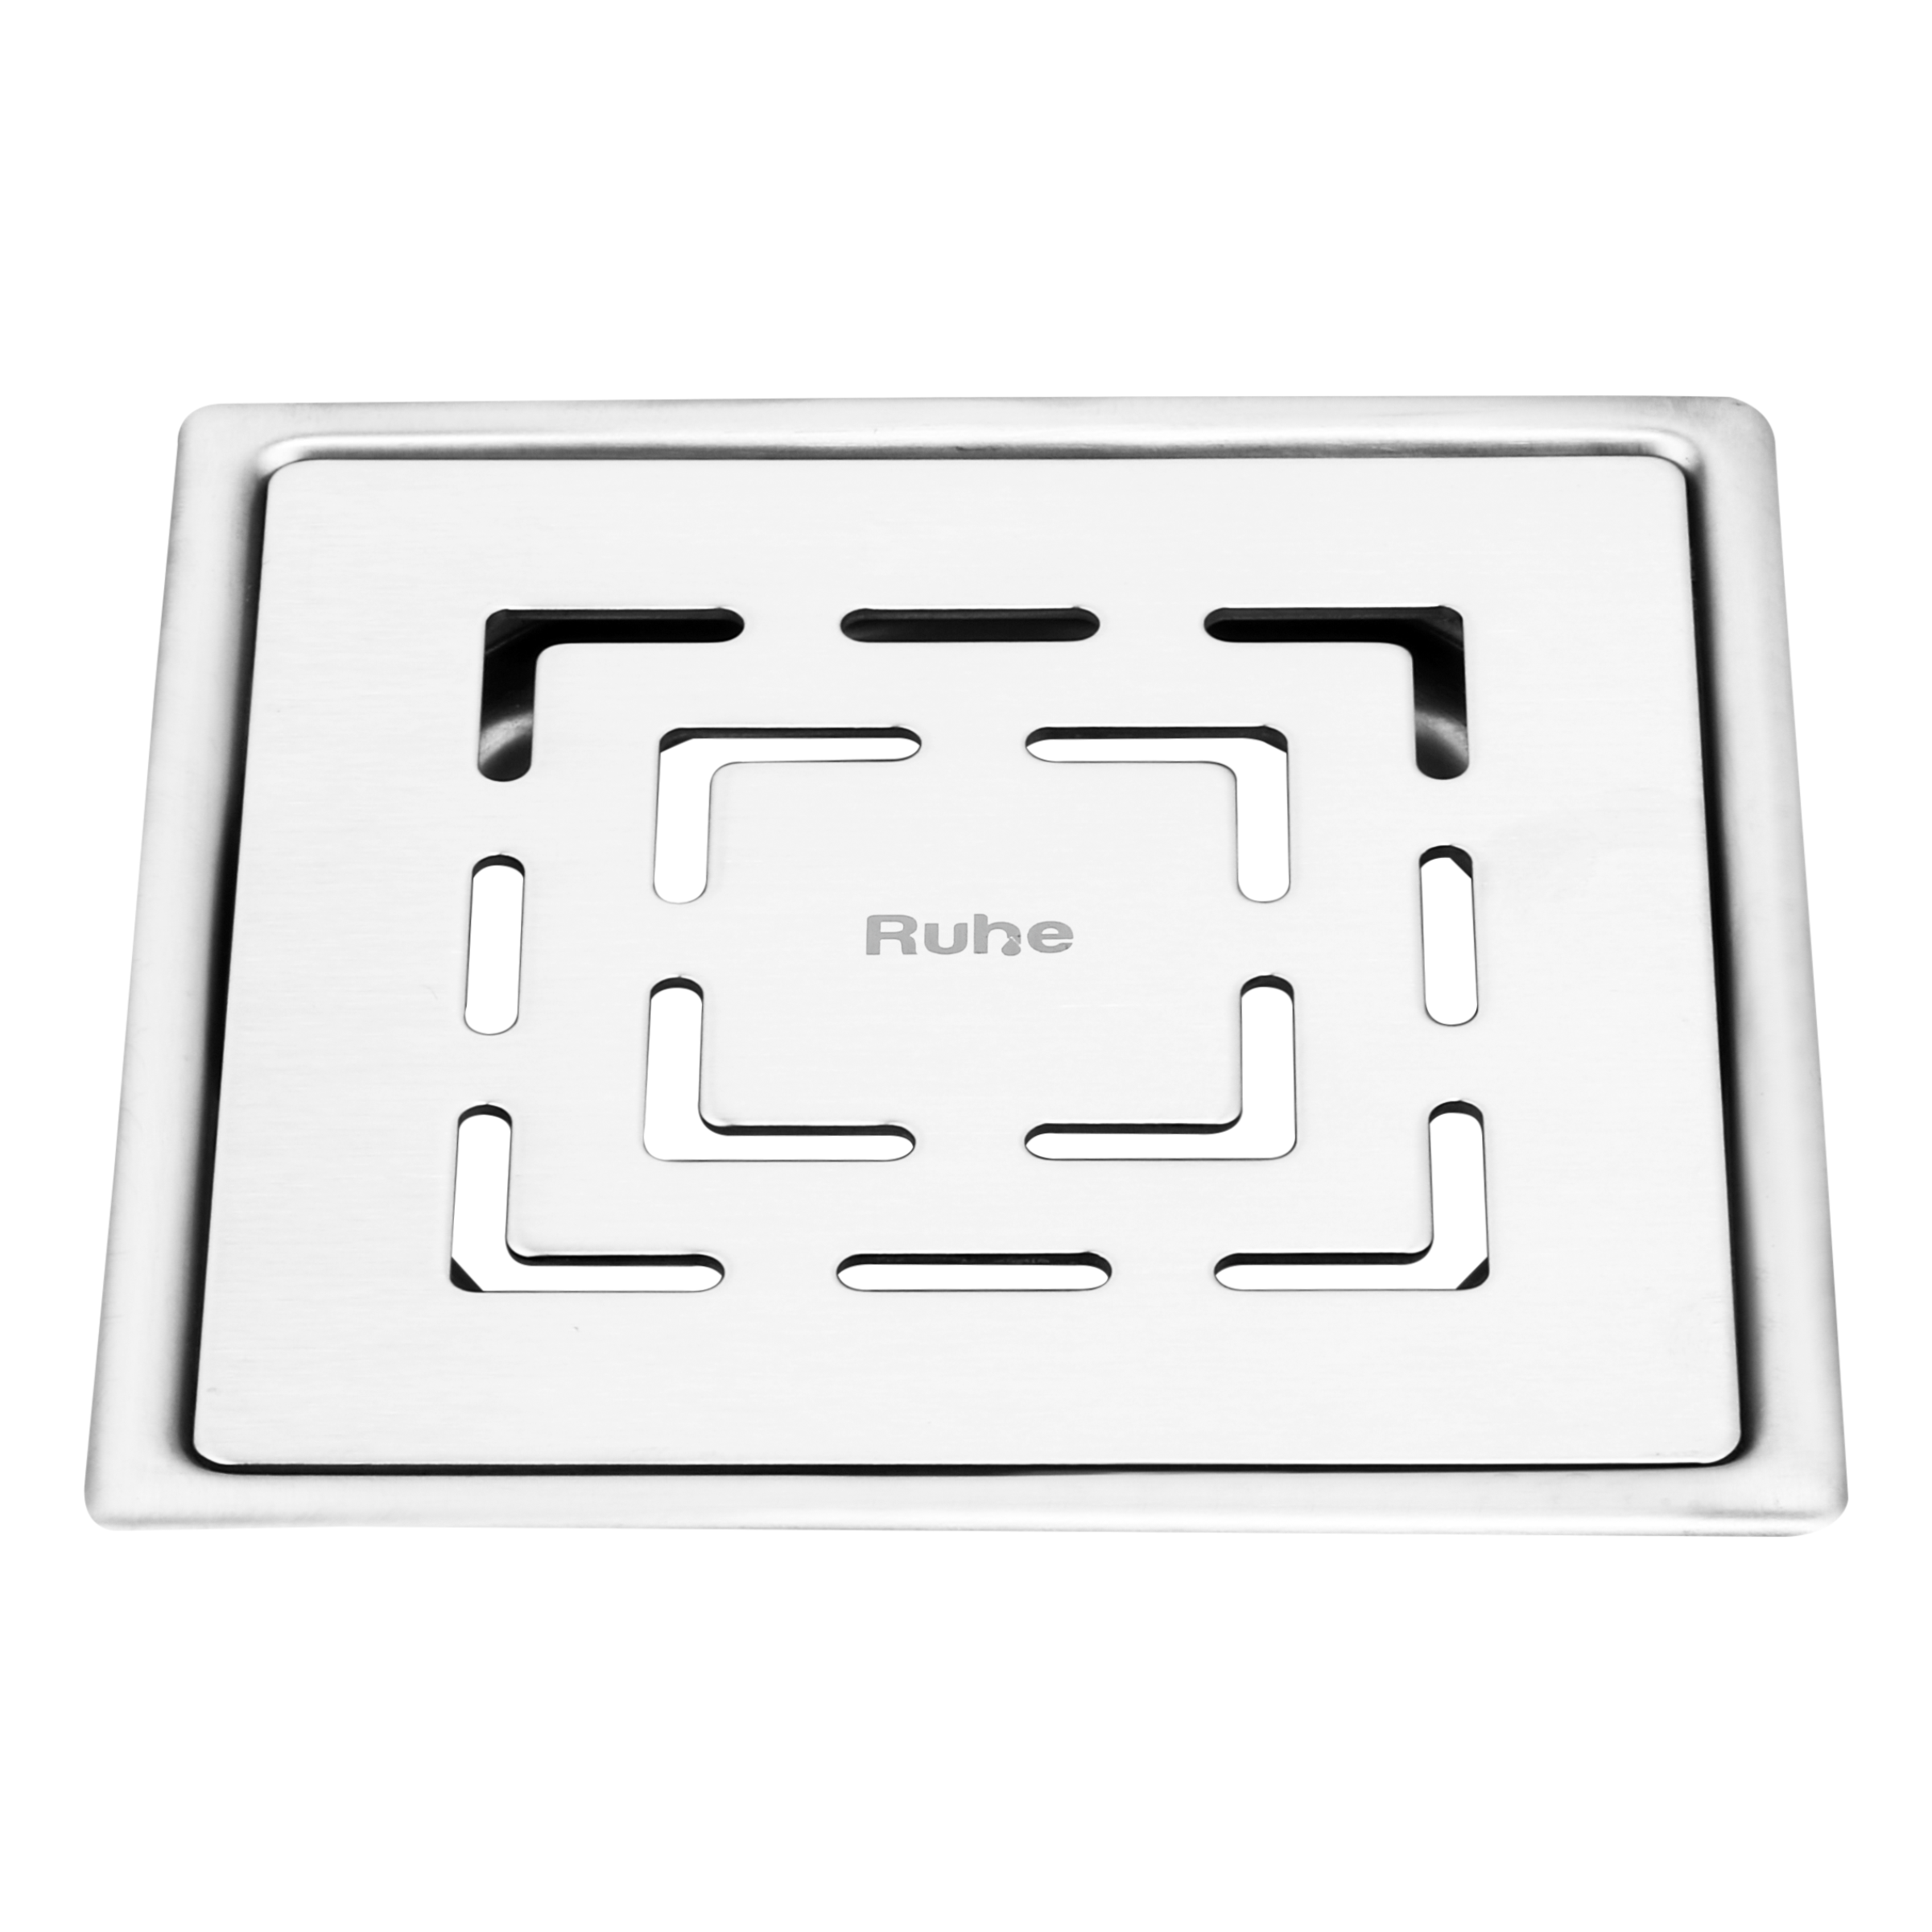 Jupiter Square Premium Flat Cut Floor Drain (5 x 5 Inches)